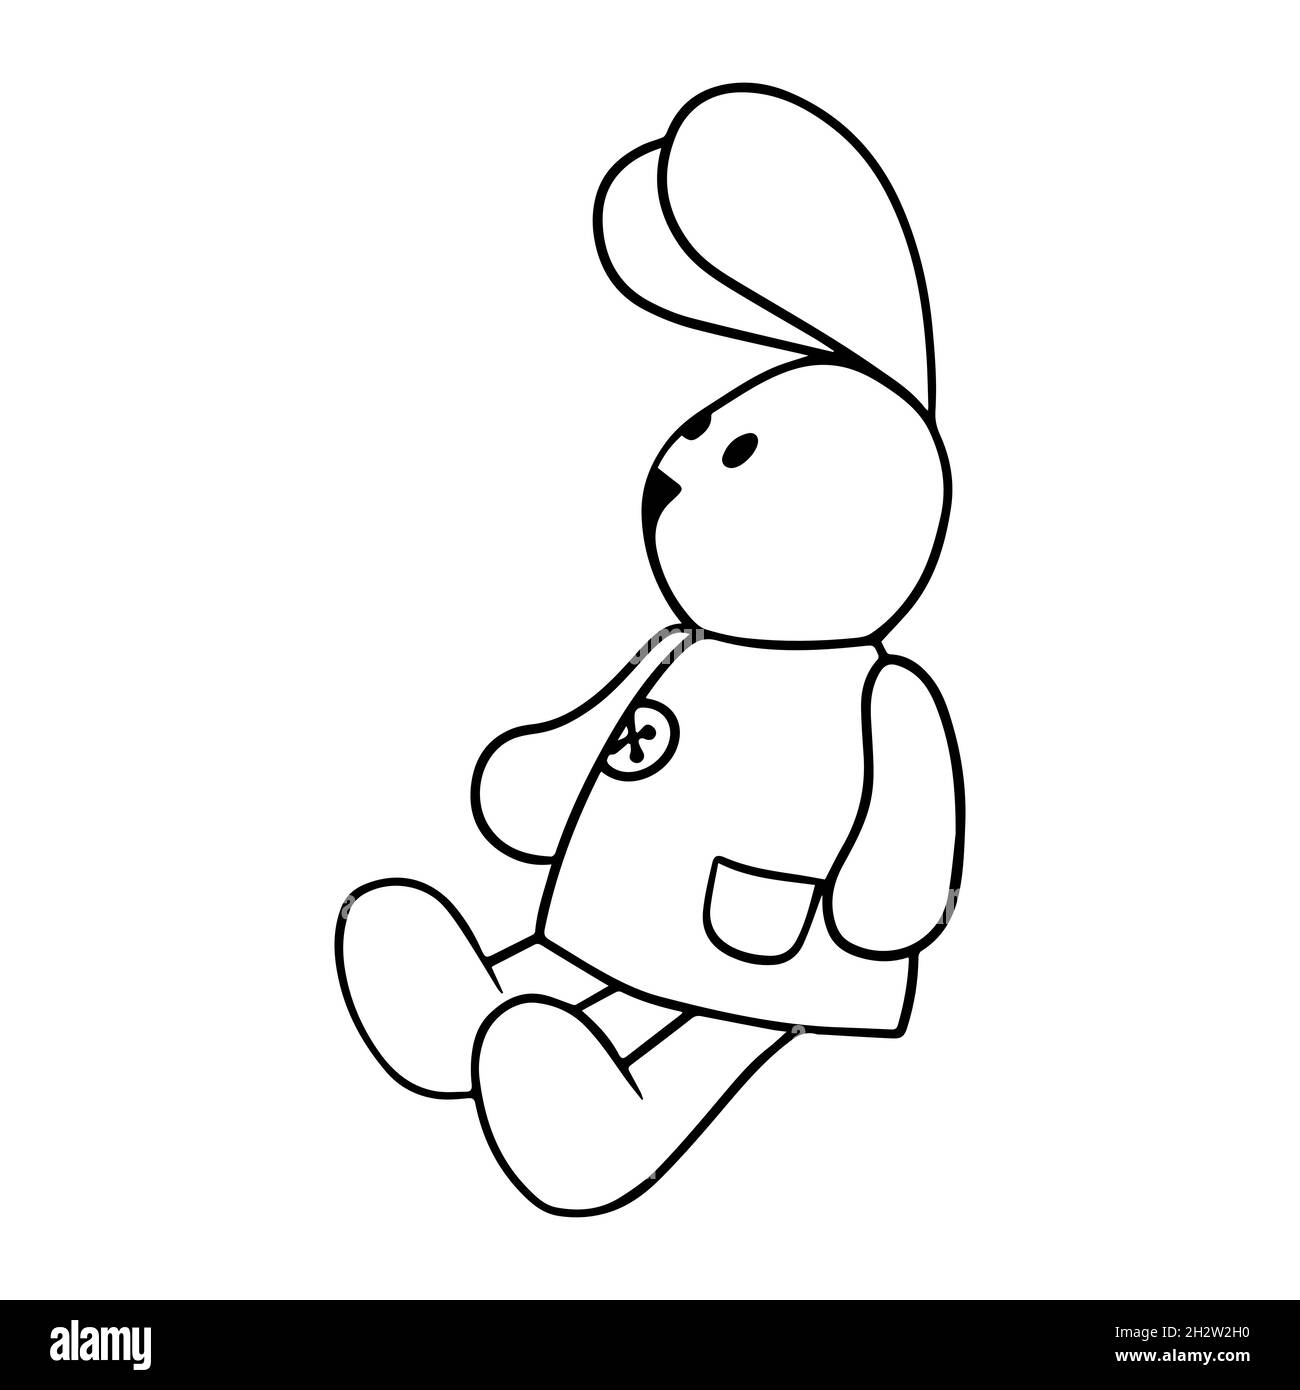 Niedliches Hasenmuster. Haseart-Mode-Kindevektor. Schöne Kaninchen Illustration für Kindergarten-T-Shirt, Kinder Kleidung, Einladung, einfache skandinavische Kind desig Stock Vektor